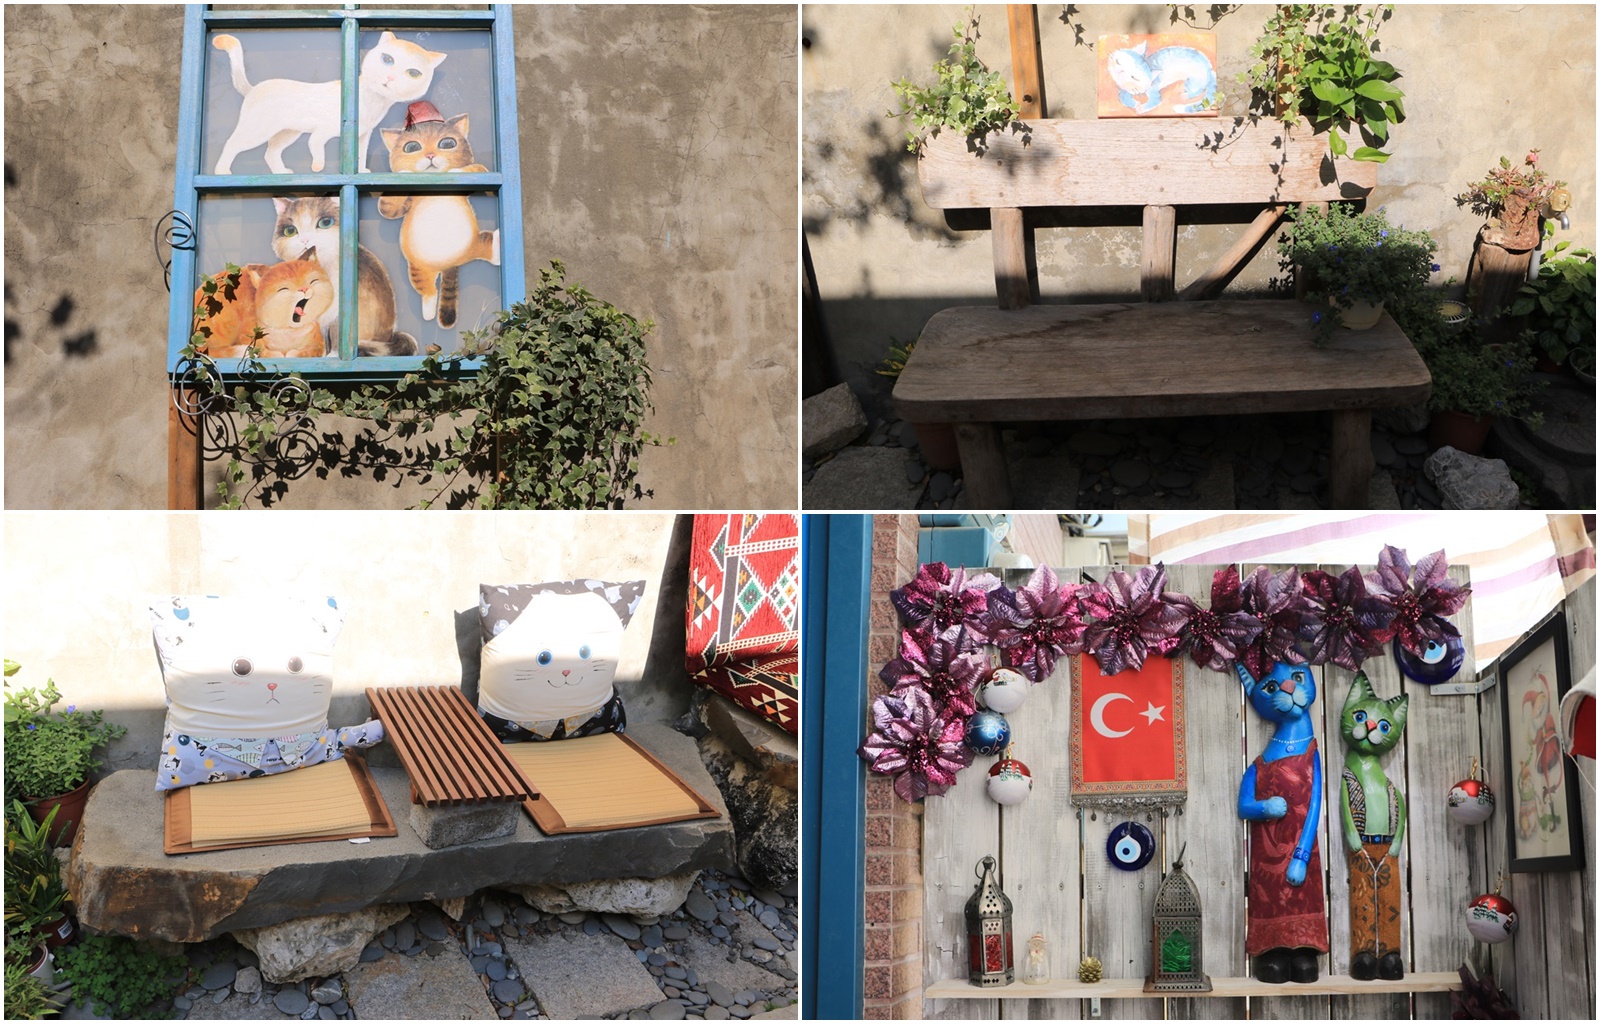 台南美食。May的移動畫室&土耳其小茶館，有可愛貓咪畫作 土耳其特色點心 x 蝸牛巷